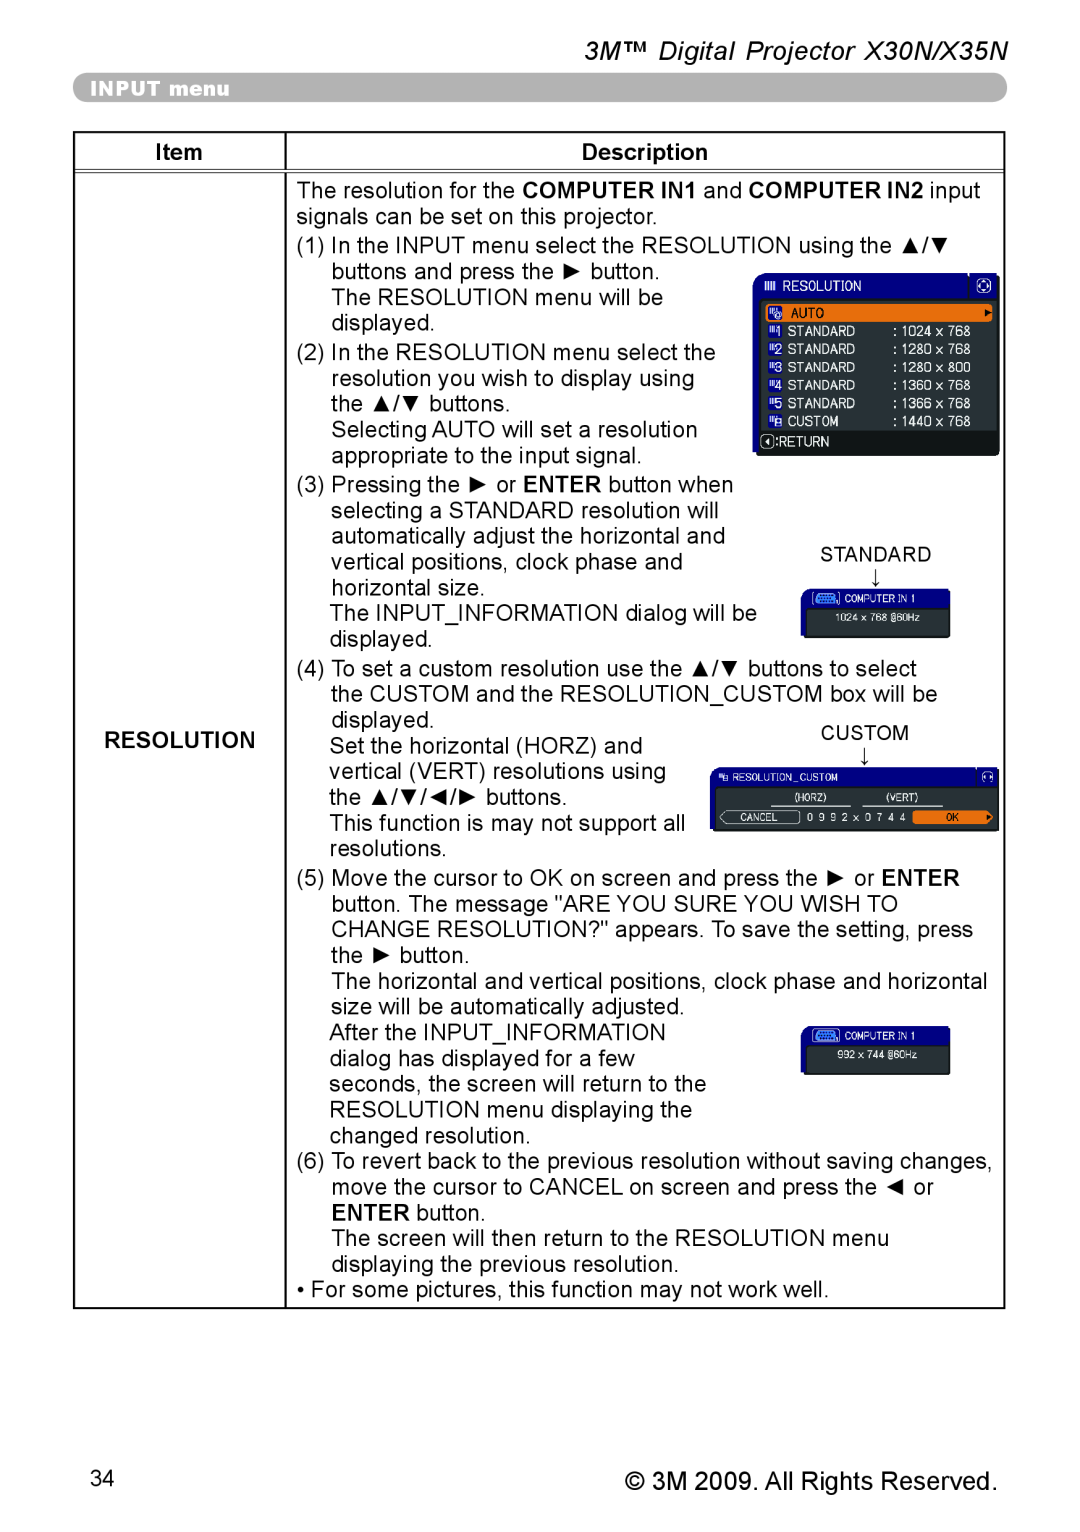 3M warranty 3M Digital Projector X30N/X35N, Item, Description, Resolution 